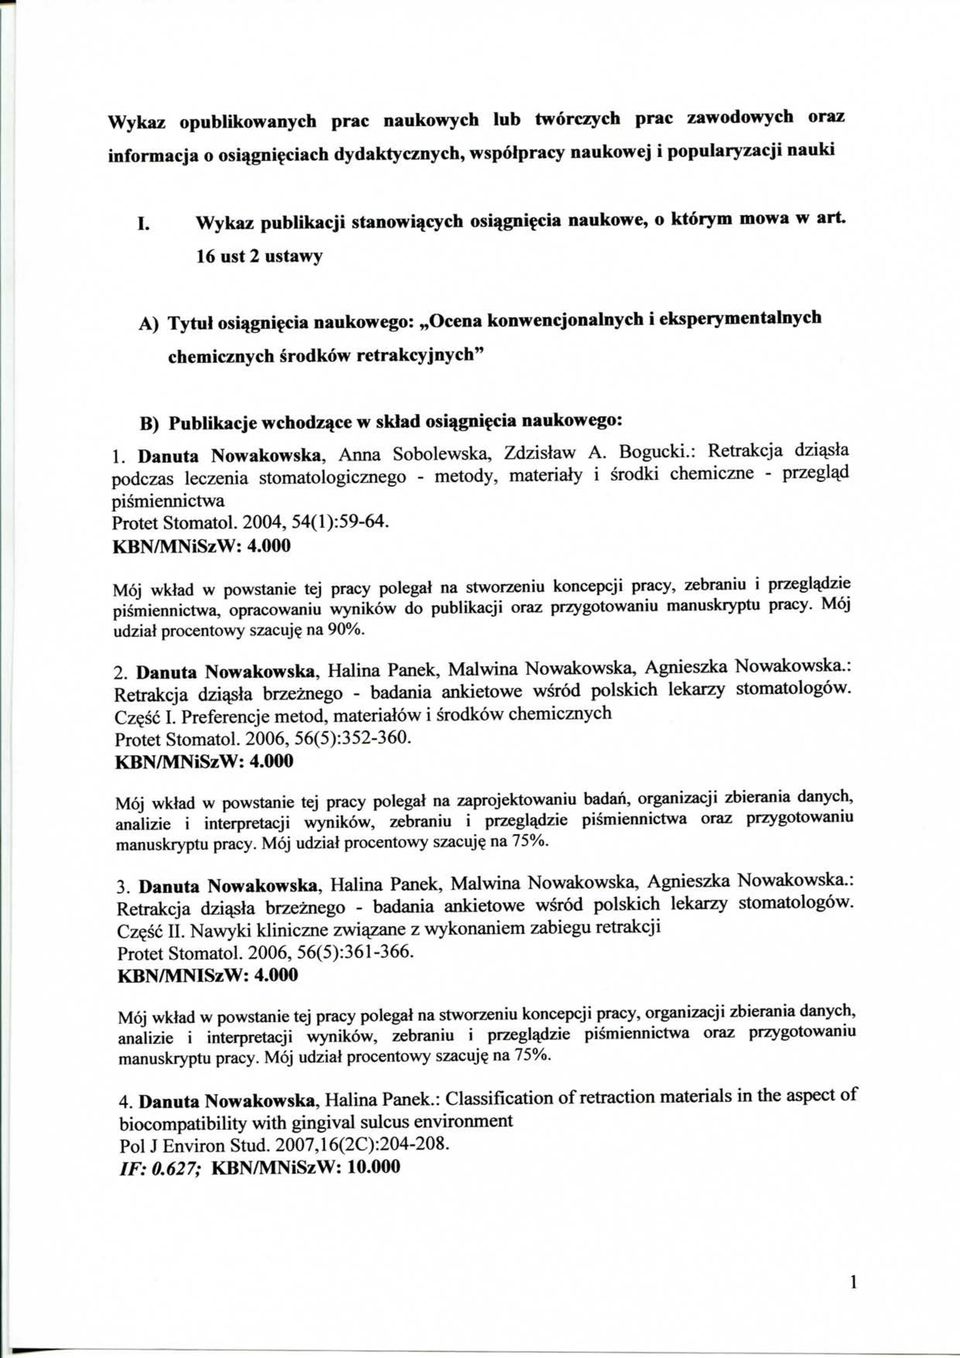 Publikacje wchodz^ce w sklad osiqgni^cia naukowego: 1. Danuta Nowakowska, Anna Sobolewska, Zdzislaw A. Bogucki.